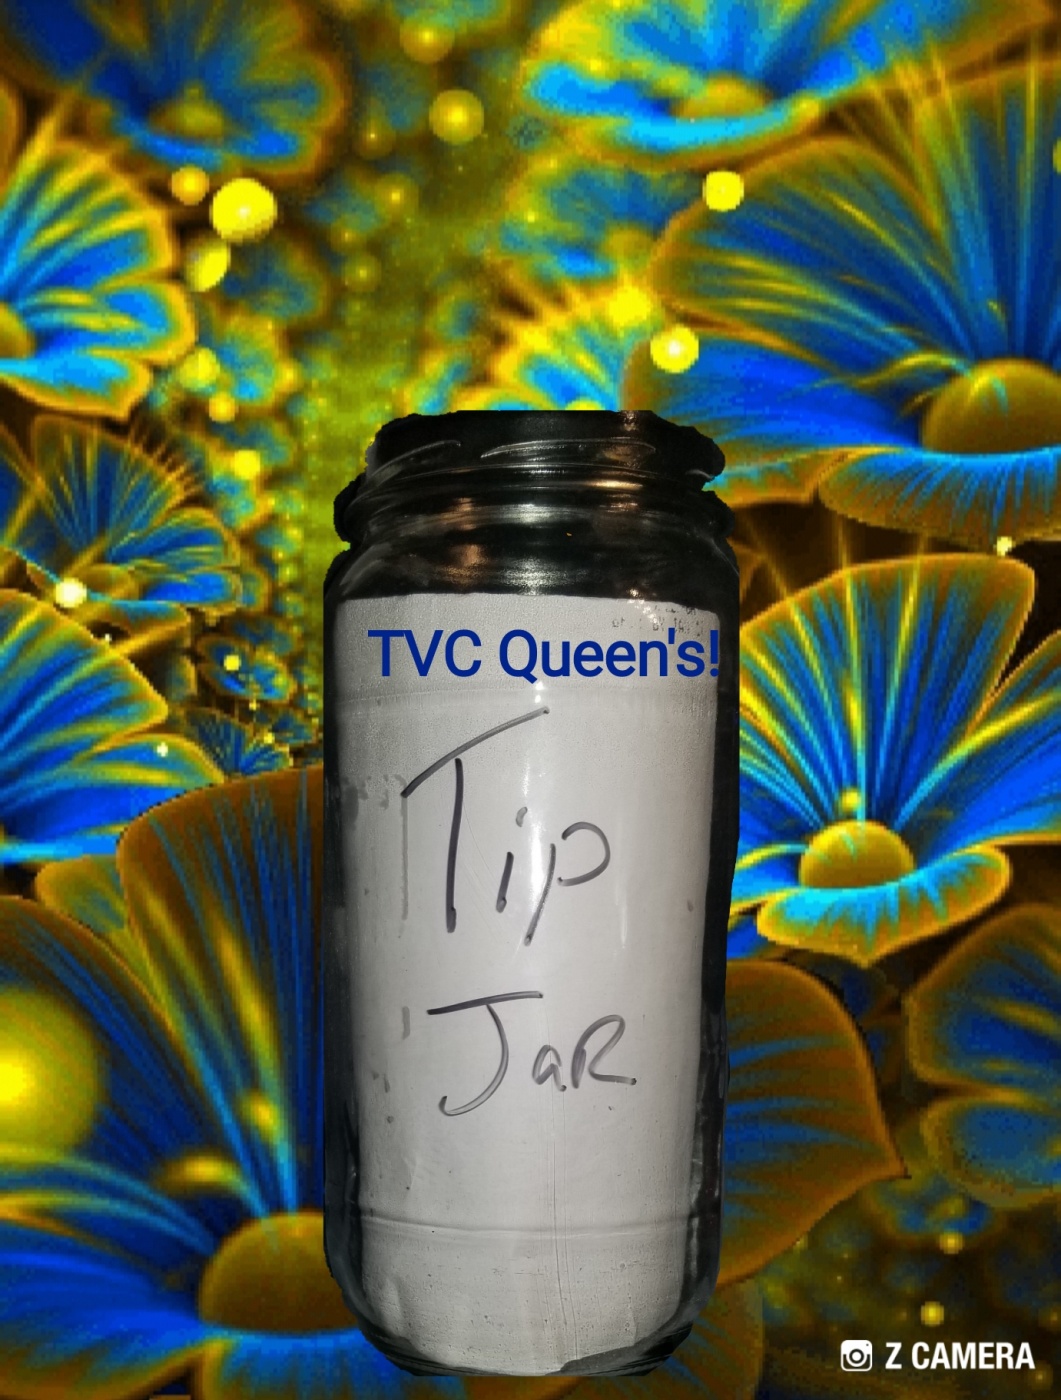 TVC Queen Tip Jar